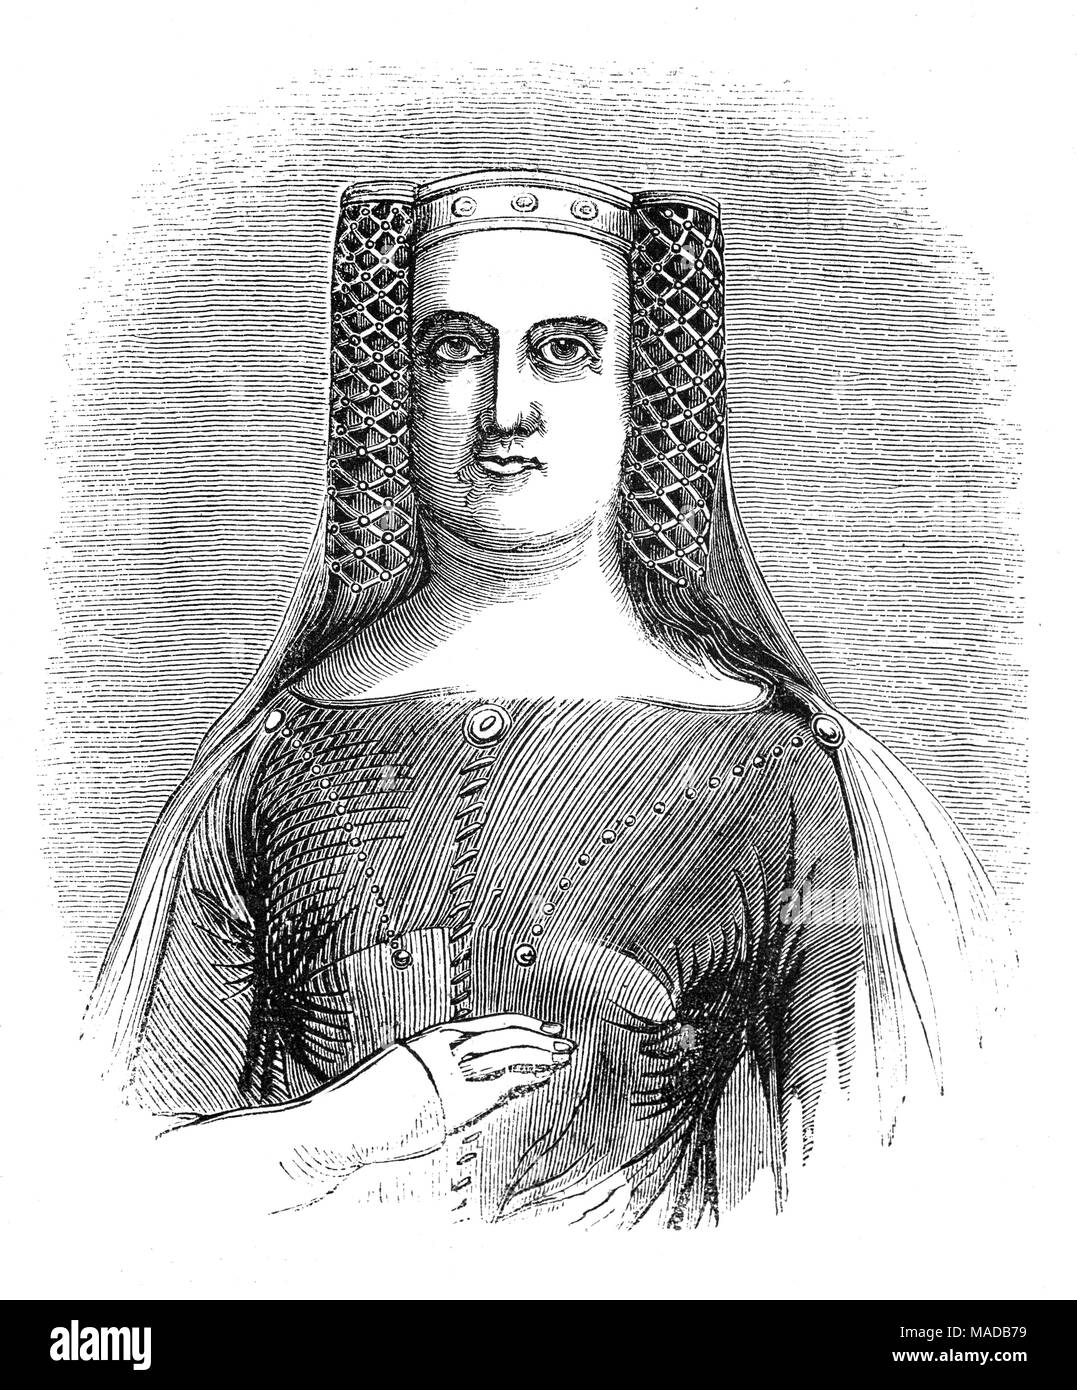 Philippa de Hainaut (1314 - 1369) fut reine d'Angleterre en tant qu'épouse du roi Édouard III. Edward avait promis en 1326 de l'épouser dans les deux années suivantes. Elle était mariée à Edward, d'abord par procuration, lorsqu'Edward expédié sous l'évêque de Coventry 'à l'épouser dans son nom' à Valenciennes (deuxième ville en importance du comté de Hainaut). Le mariage a été célébré officiellement dans la cathédrale de York le 24 janvier 1328, quelques mois après son accession au trône d'Angleterre. Banque D'Images